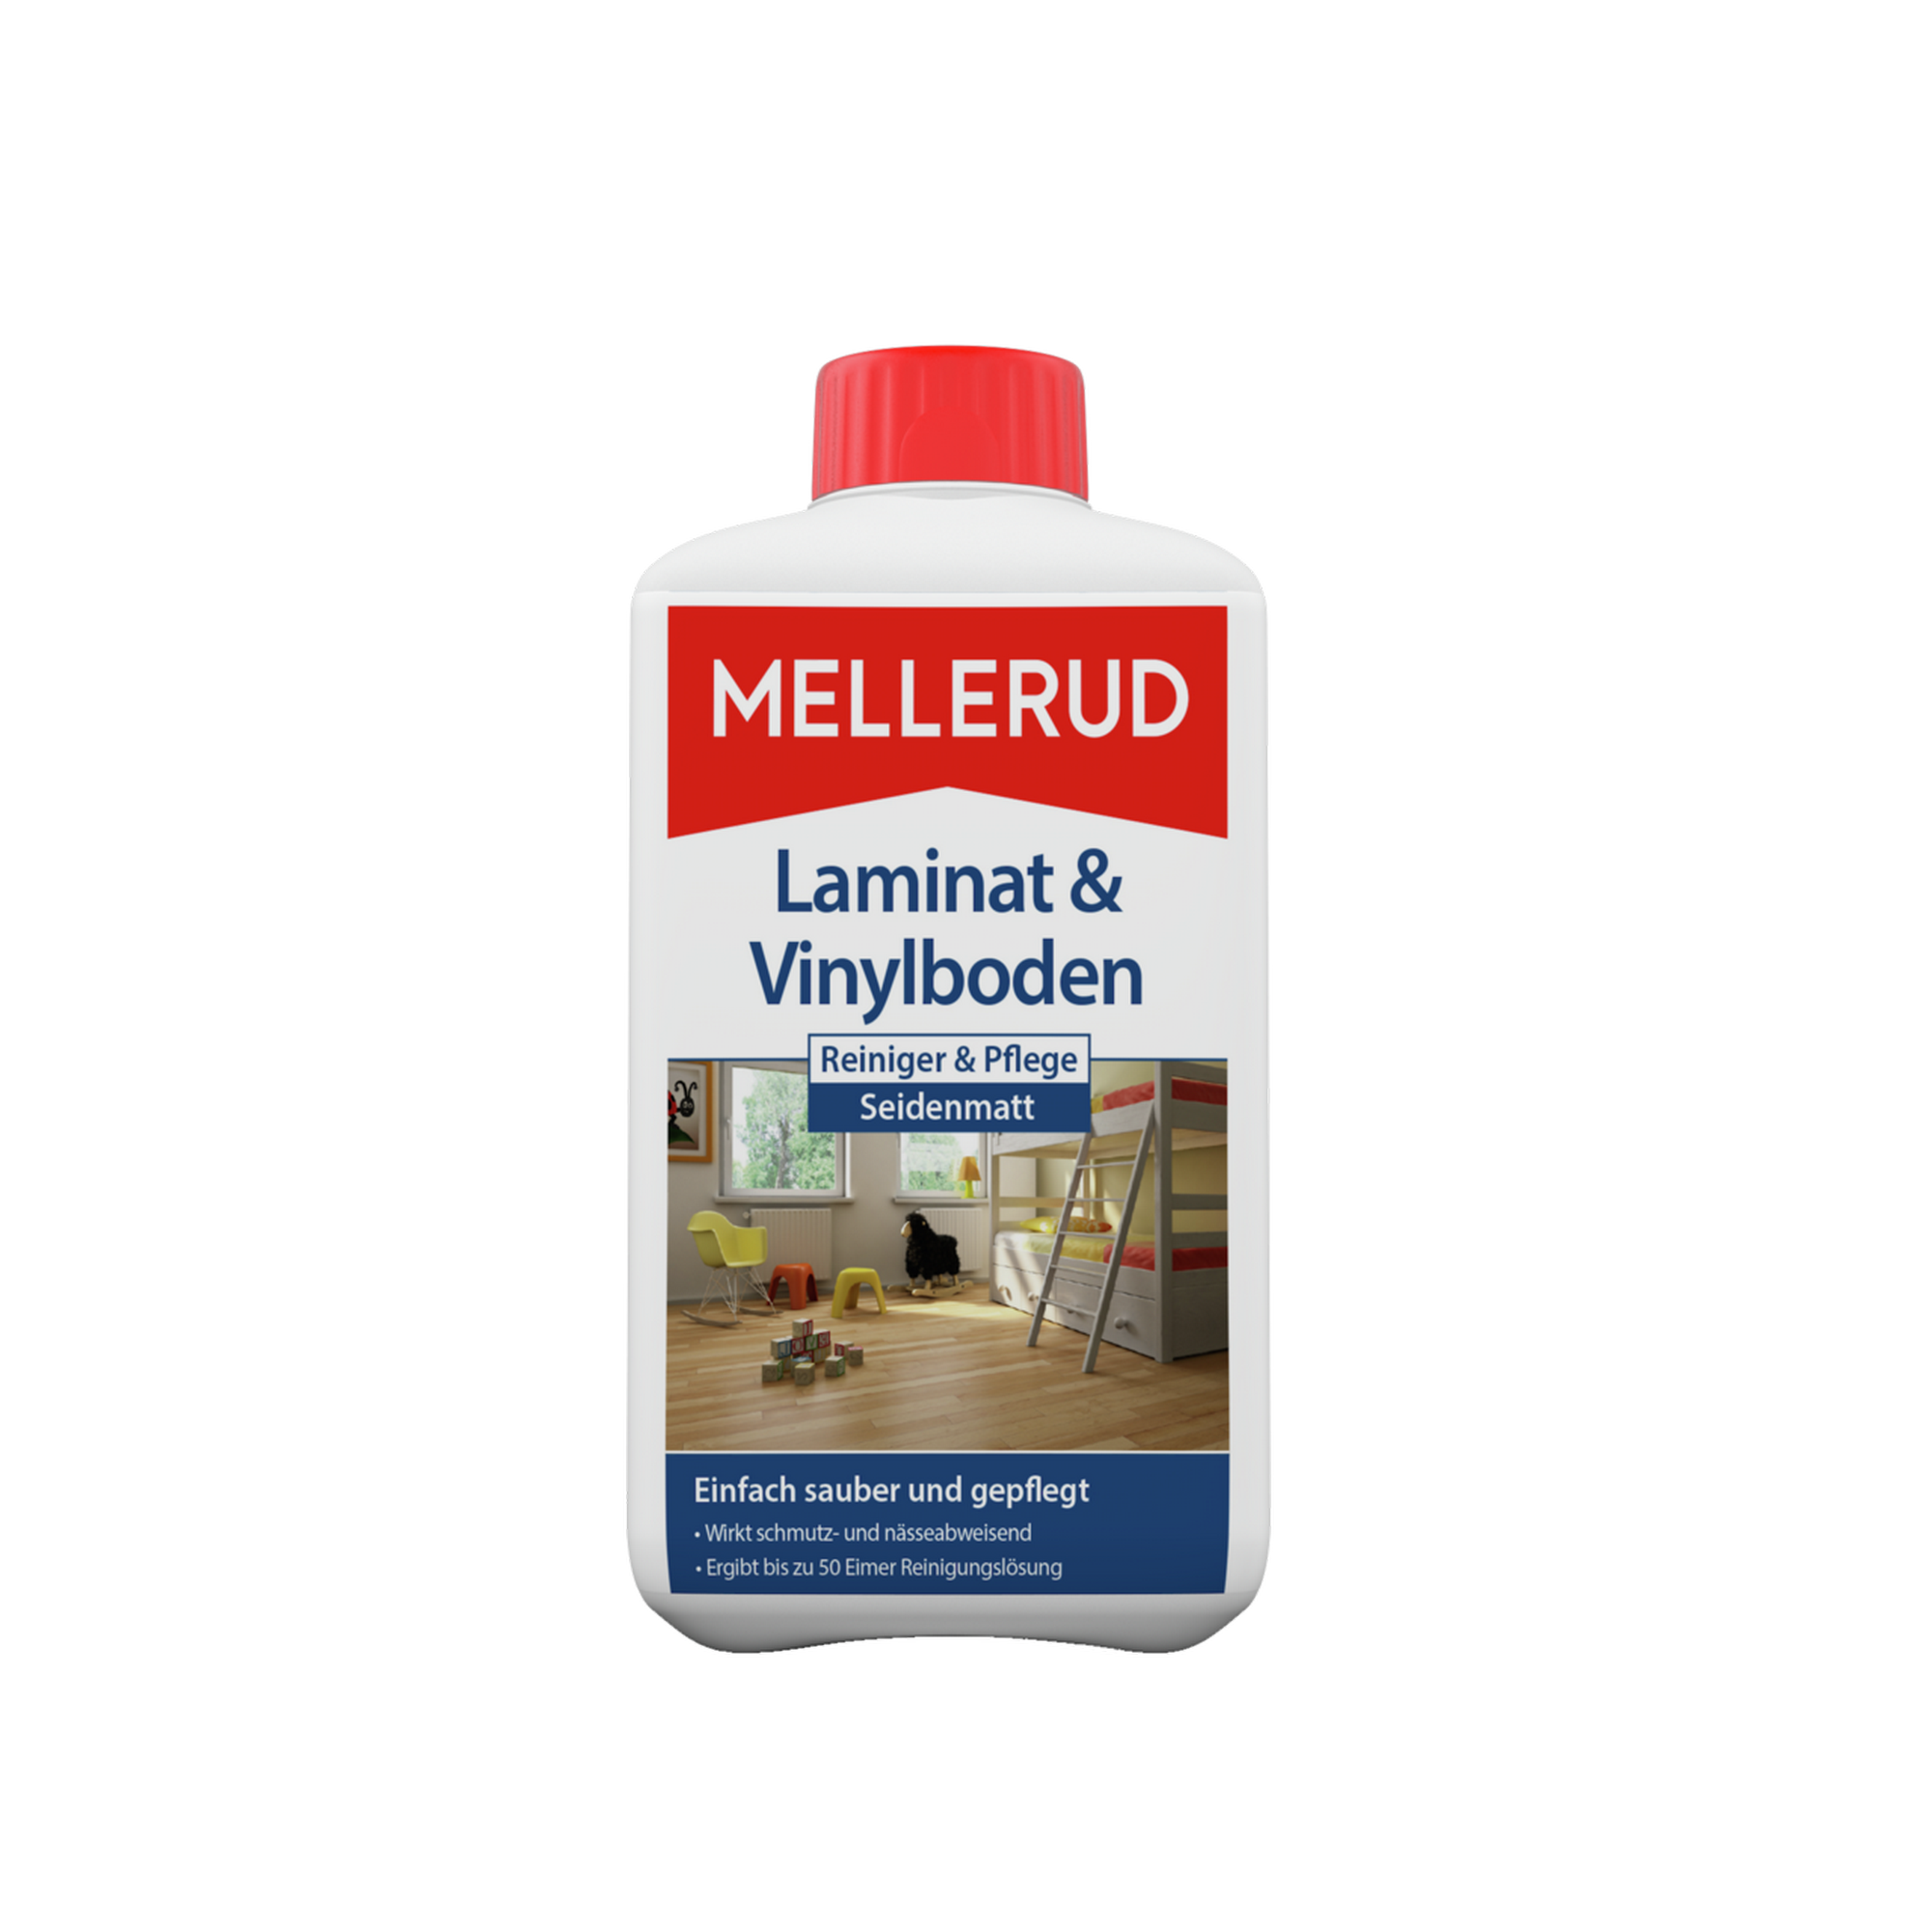 Reiniger und Pflege für Laminat und Kork 1 l + product picture